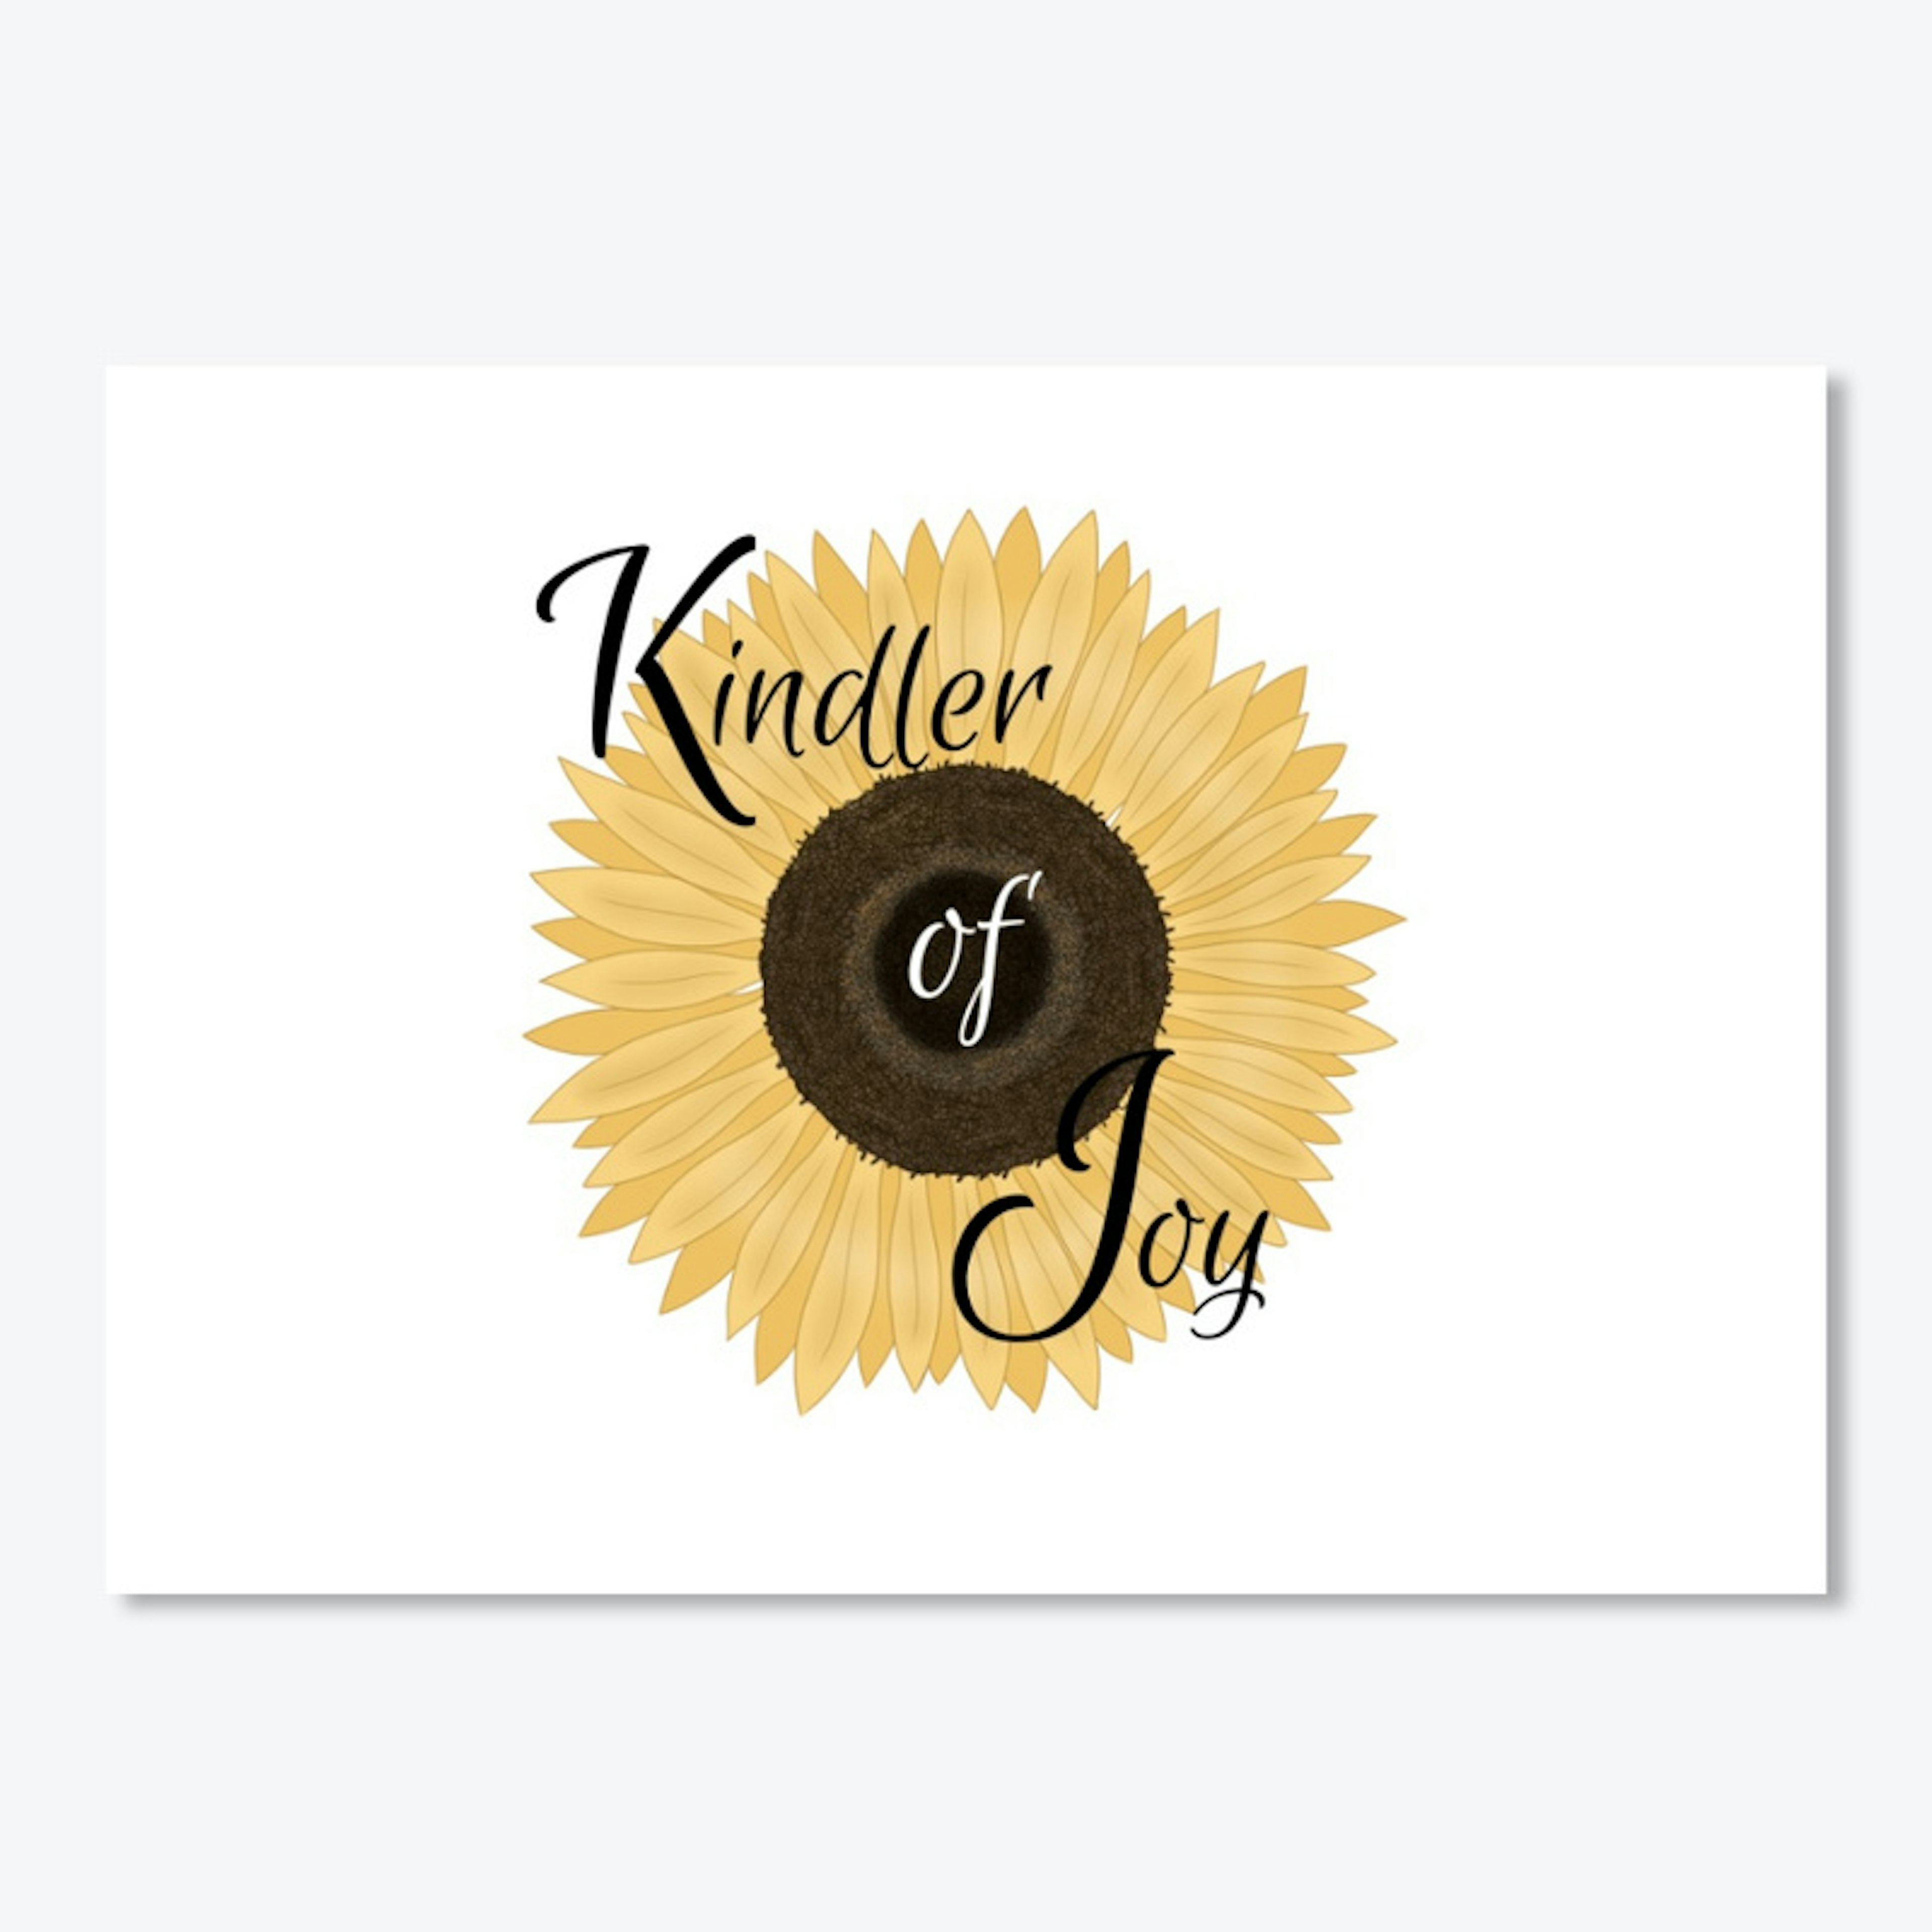 Kindler of Joy